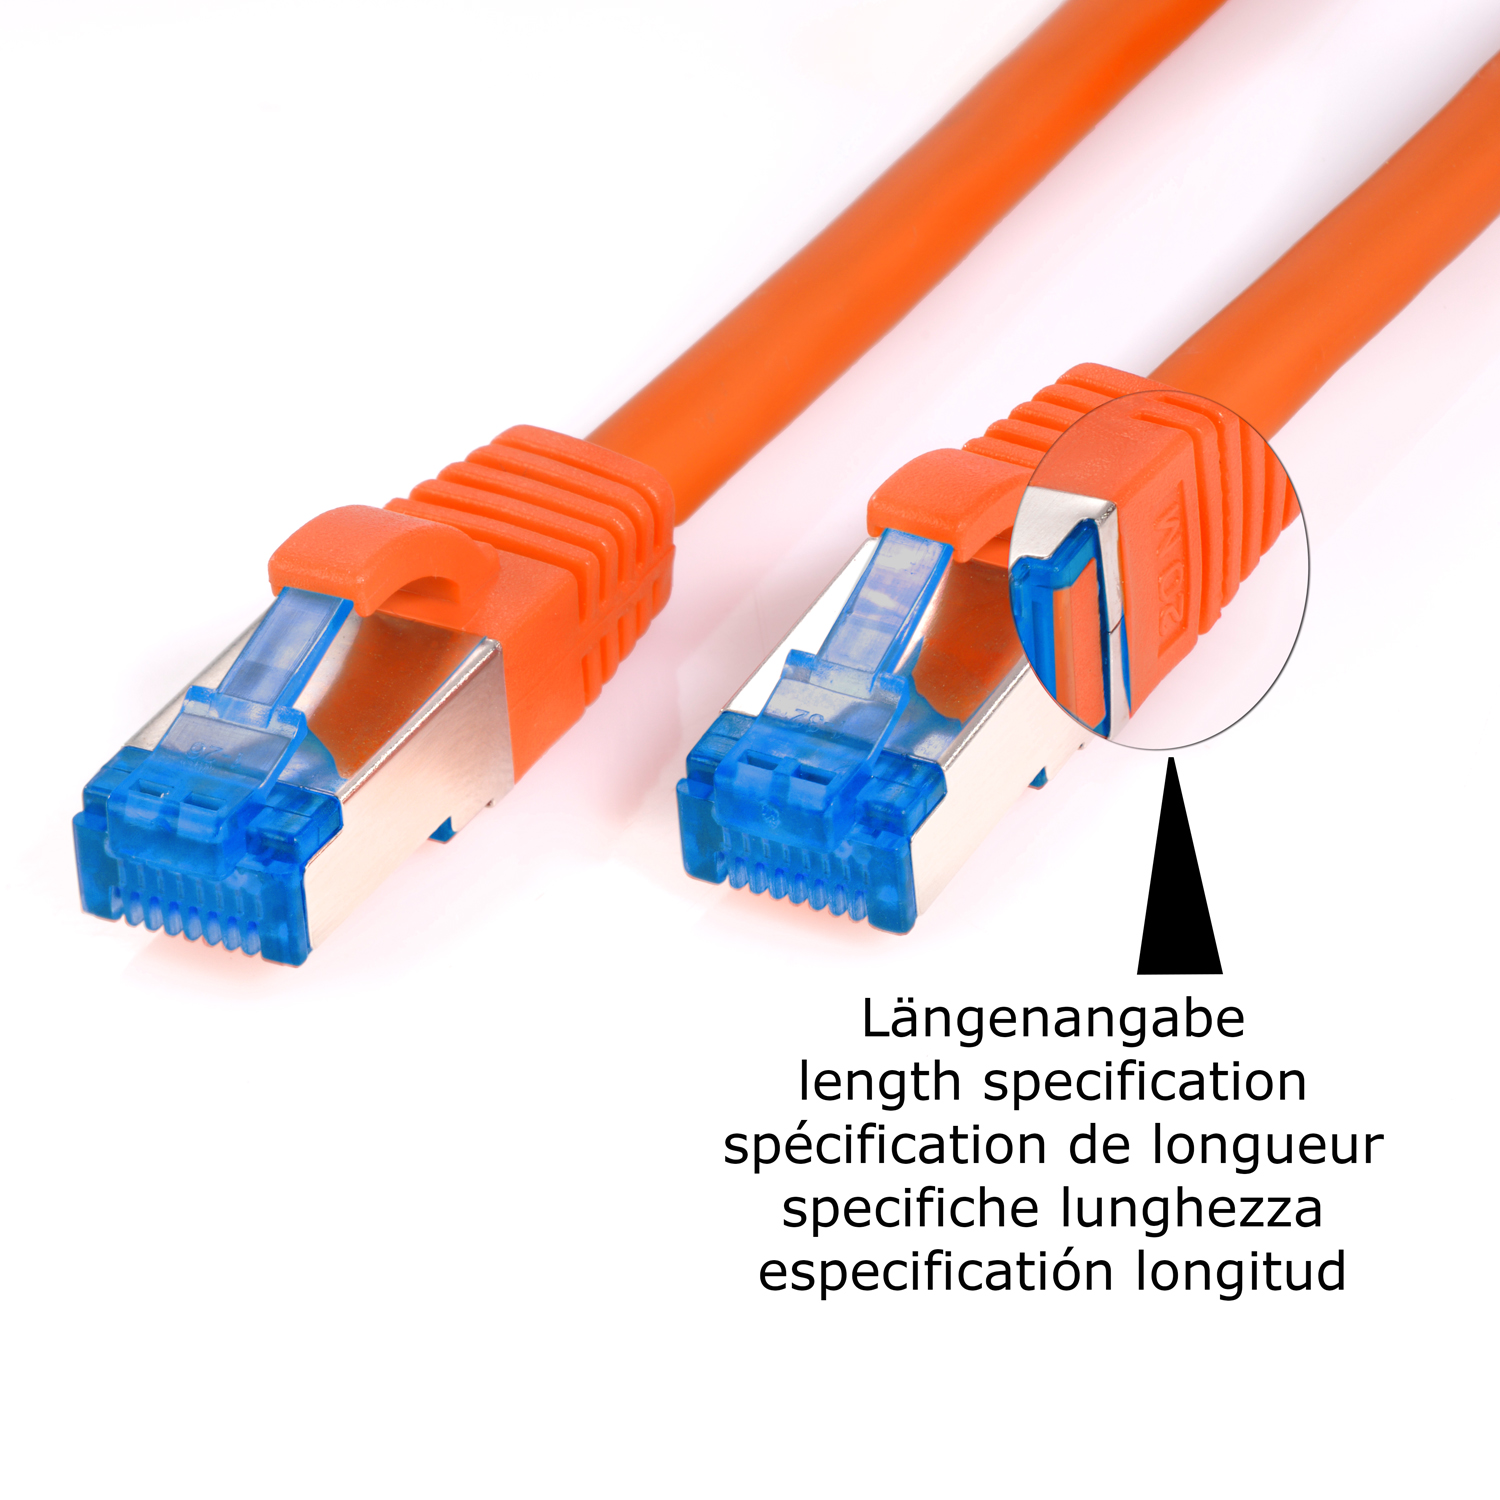 TPFNET 5er Pack 5m / Netzwerkkabel orange, 10GBit, 5 Patchkabel Netzwerkkabel, S/FTP m